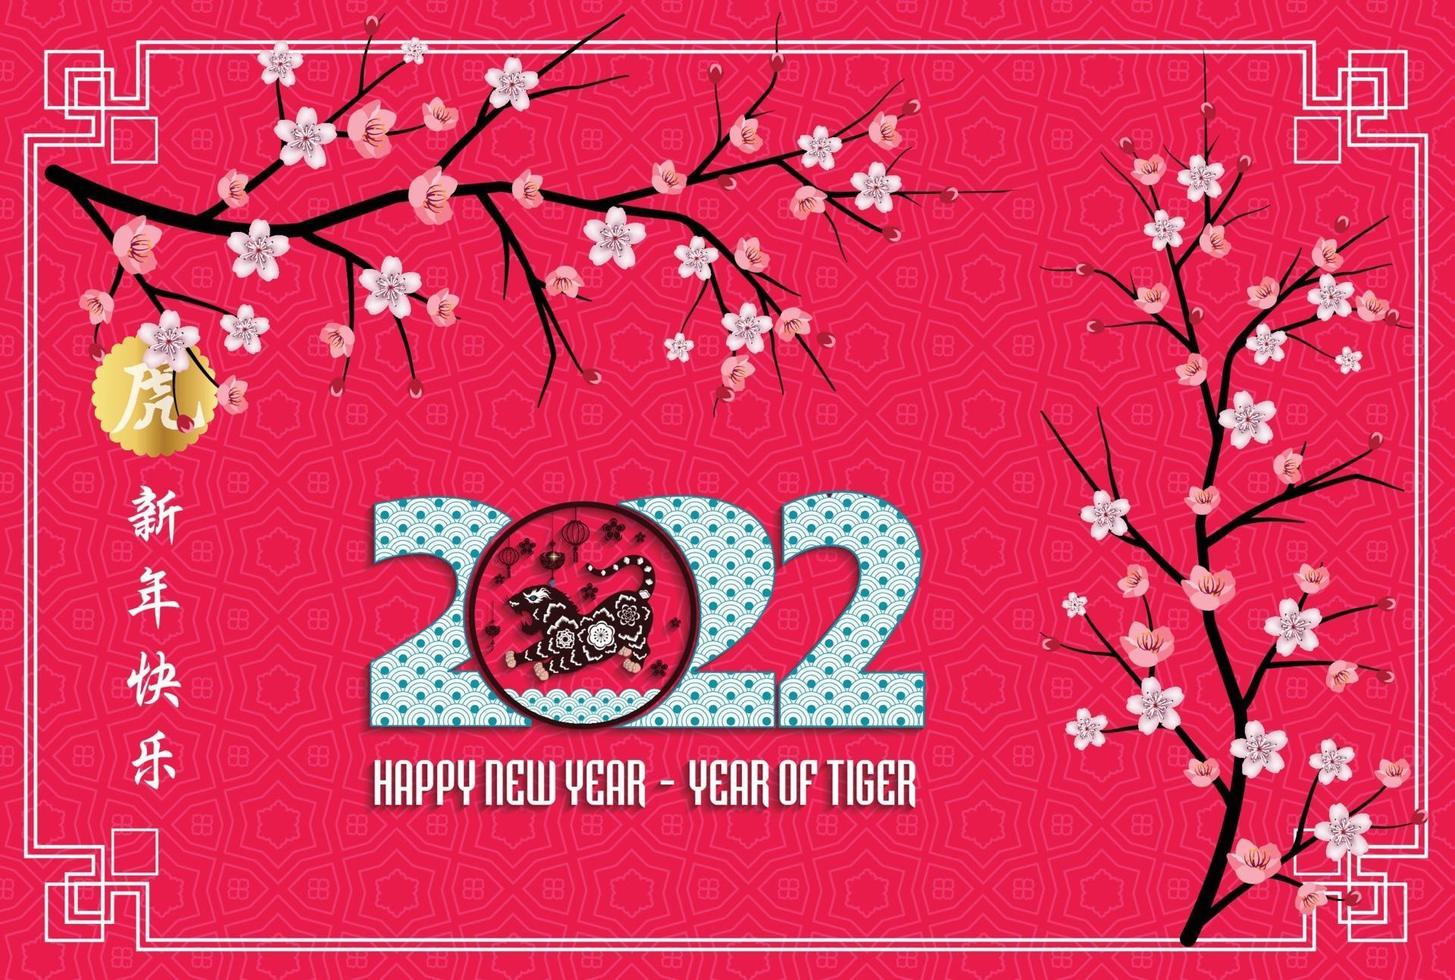 Năm mới Trung Quốc (Chinese New Year): Năm mới Trung Quốc là một trong những dịp lễ lớn nhất trong năm, với nhiều hoạt động cầu may và tình cảm gia đình. Hãy đến và thưởng thức những hình ảnh đẹp của lễ hội để cảm nhận tinh thần rộn ràng nhất của người Trung Quốc!